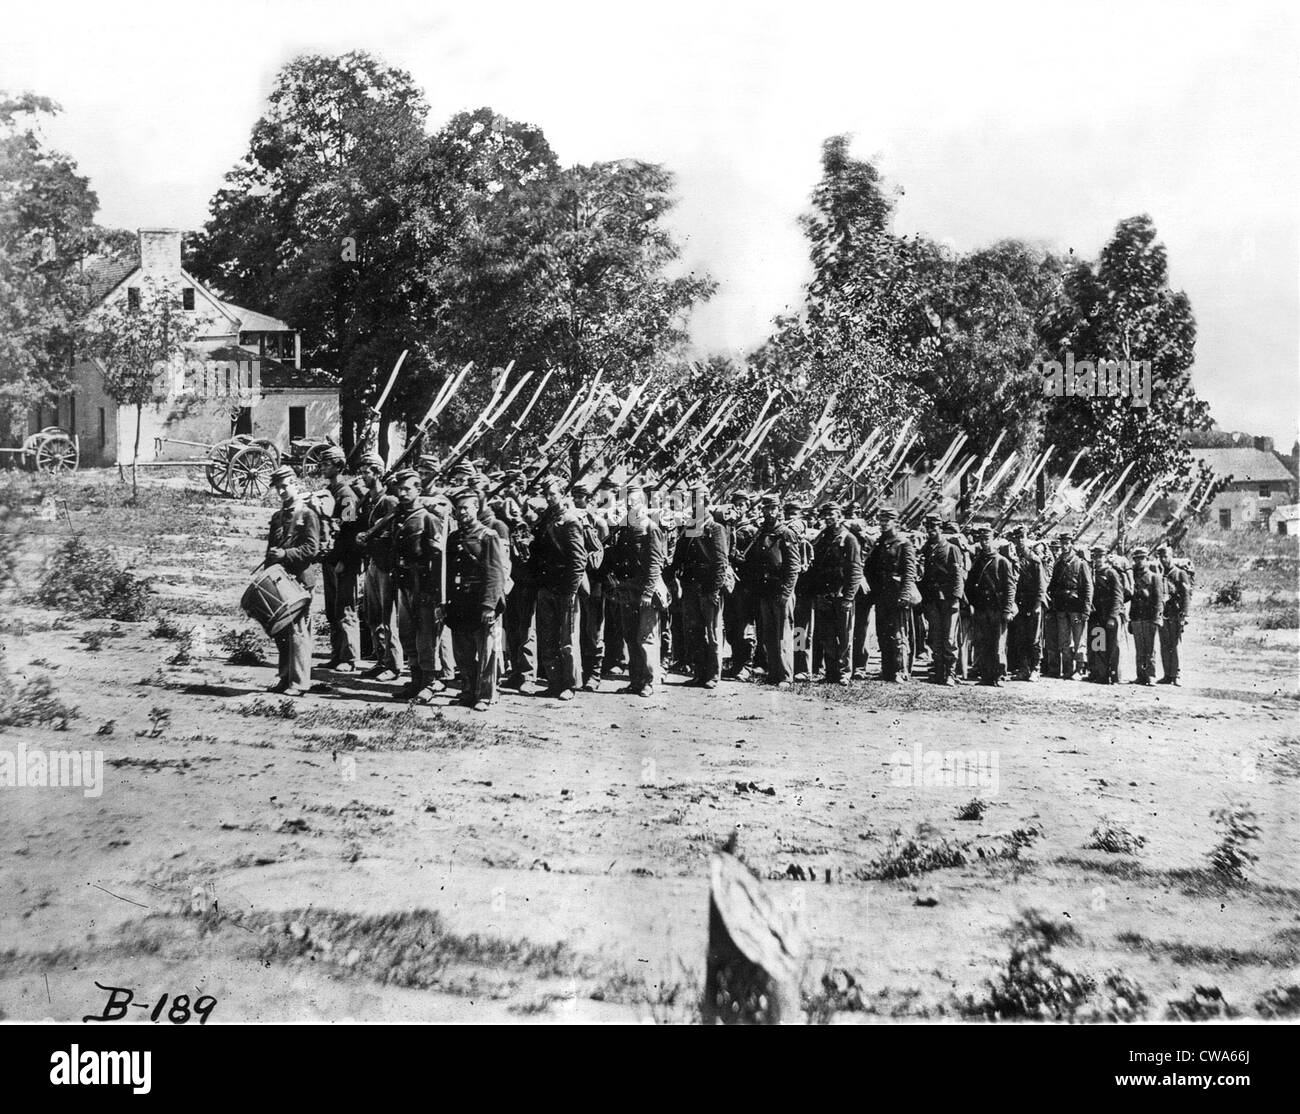 ZIVILE WAR-The Schlacht von Antietam-Union Soldaten marschieren... Höflichkeit: CSU Archive / Everett Collection Stockfoto